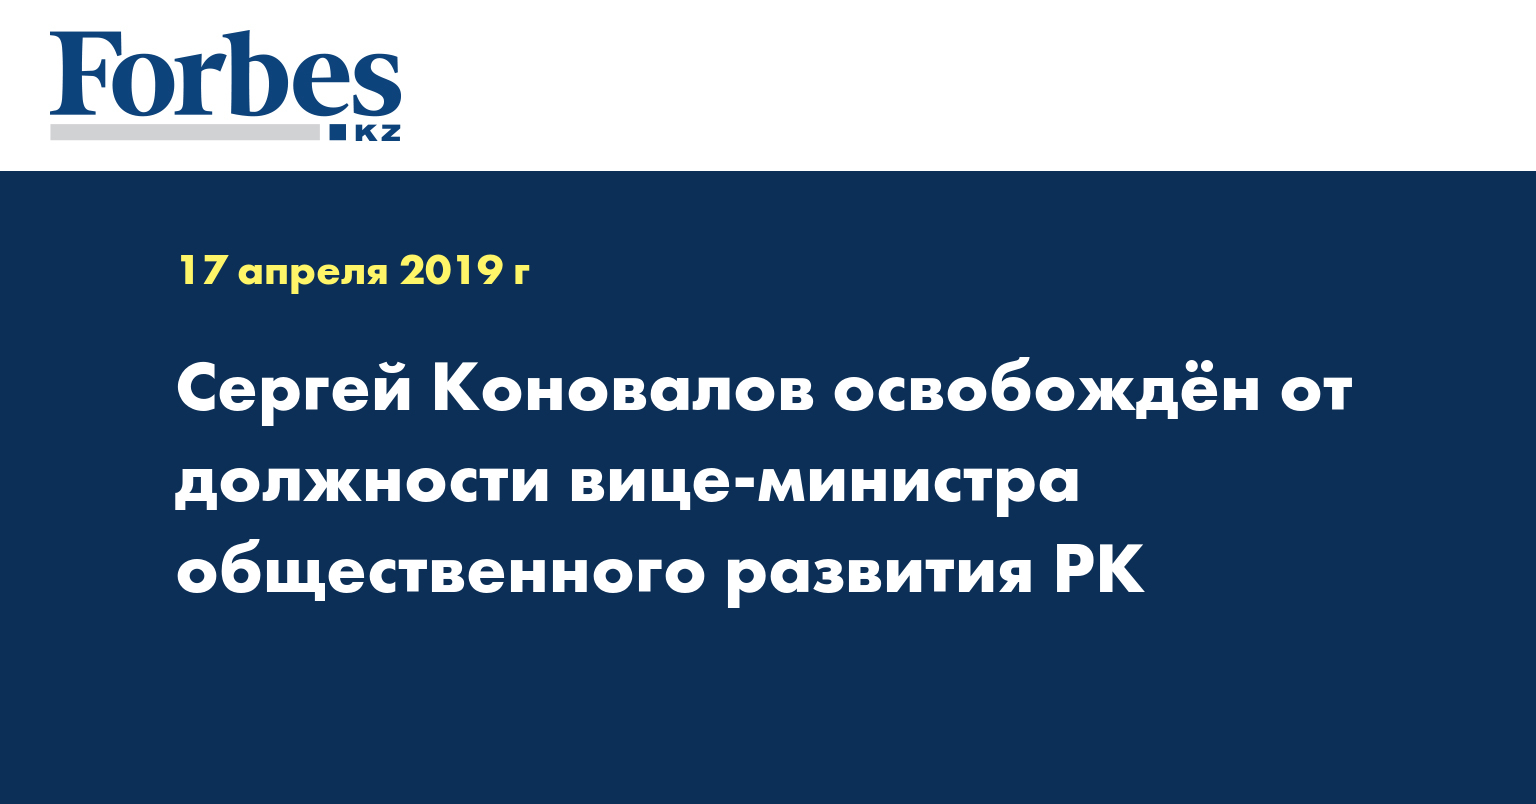 Сергей Коновалов освобожден от должности вице-министра общественного развития РК